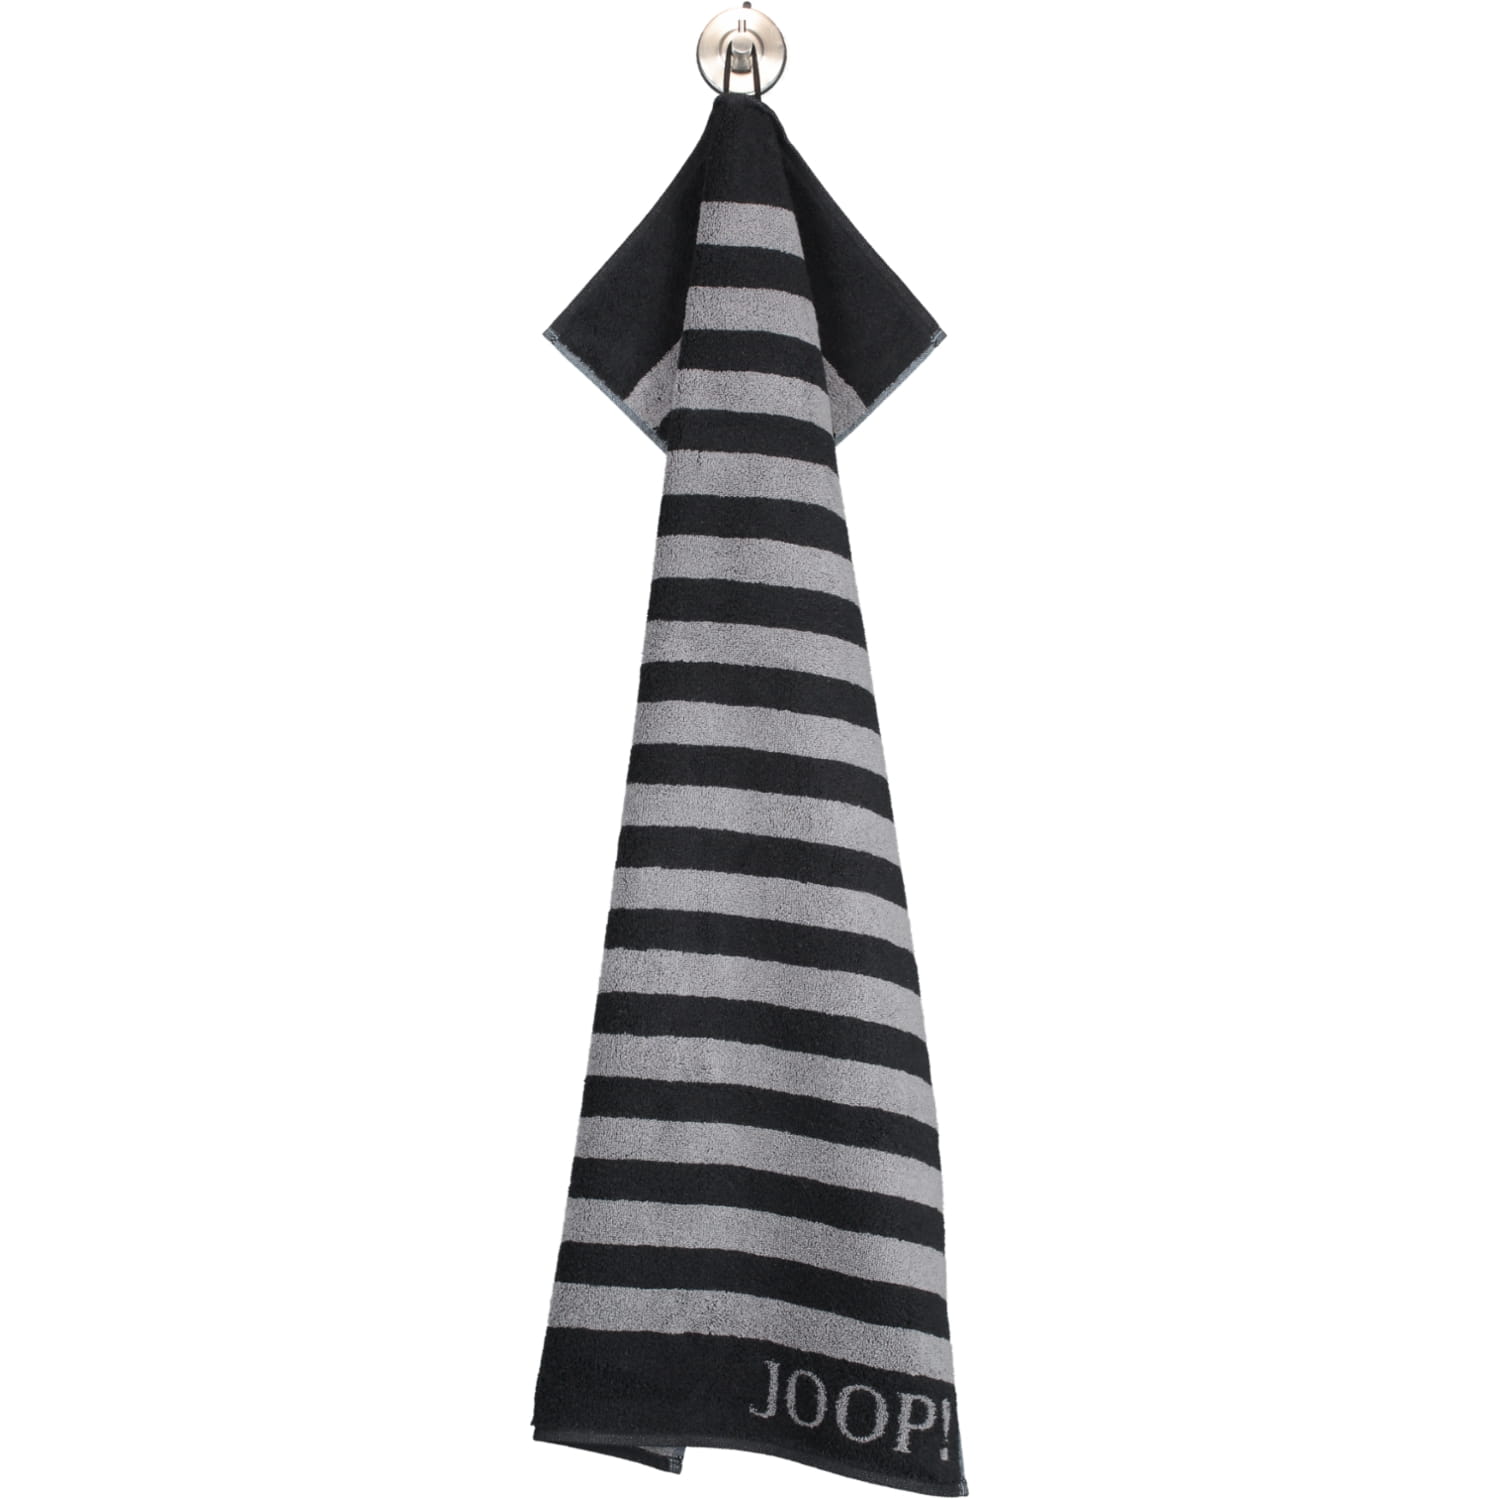 JOOP! - | - JOOP! Handtücher Stripes Marken JOOP! cm 90 - | 80x150 | Schwarz Classic 1610 Duschtuch Farbe: -